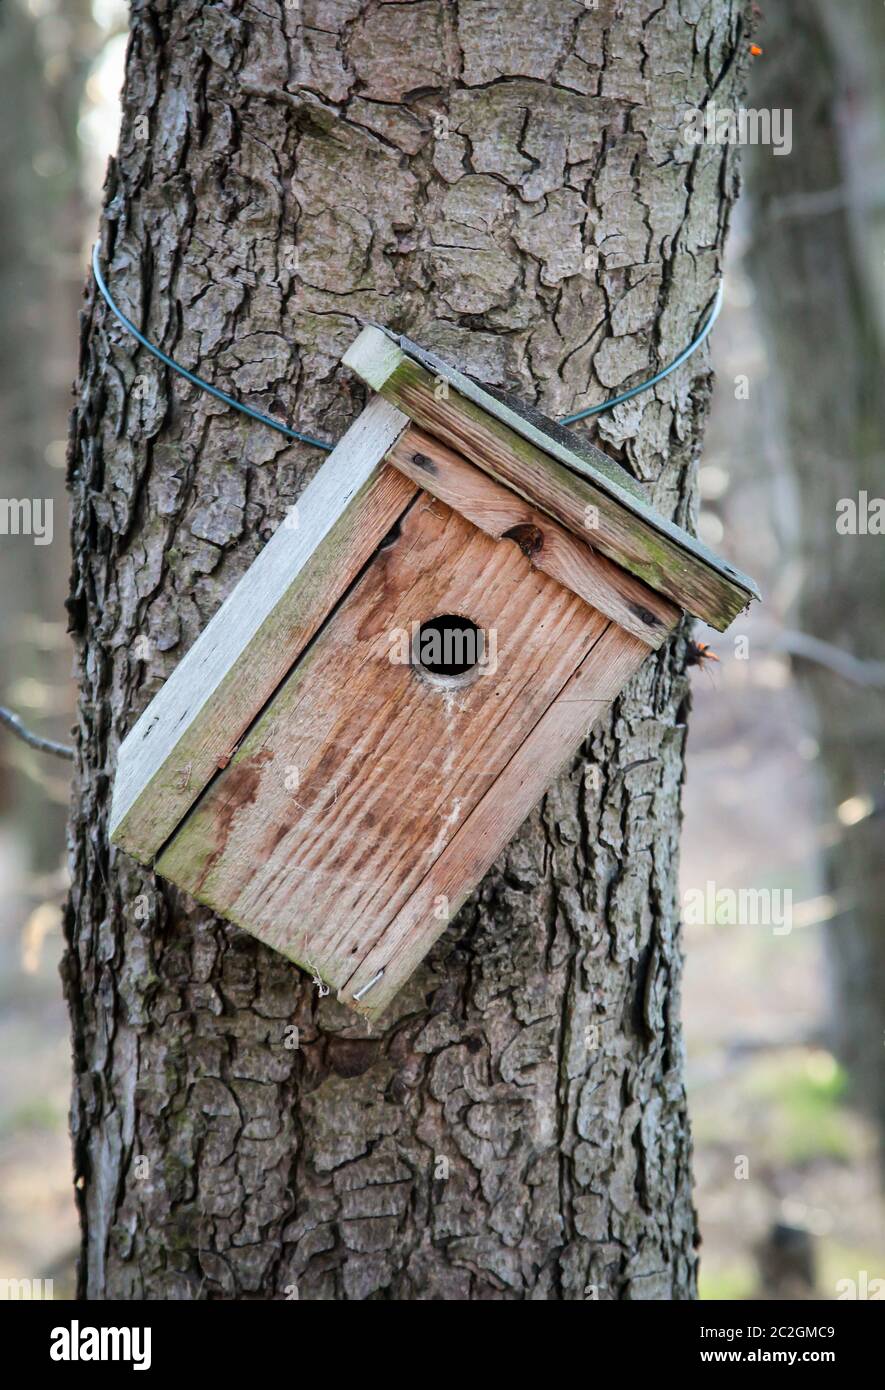 An einem Baumstamm hängt ein Nestingkasten Stockfoto